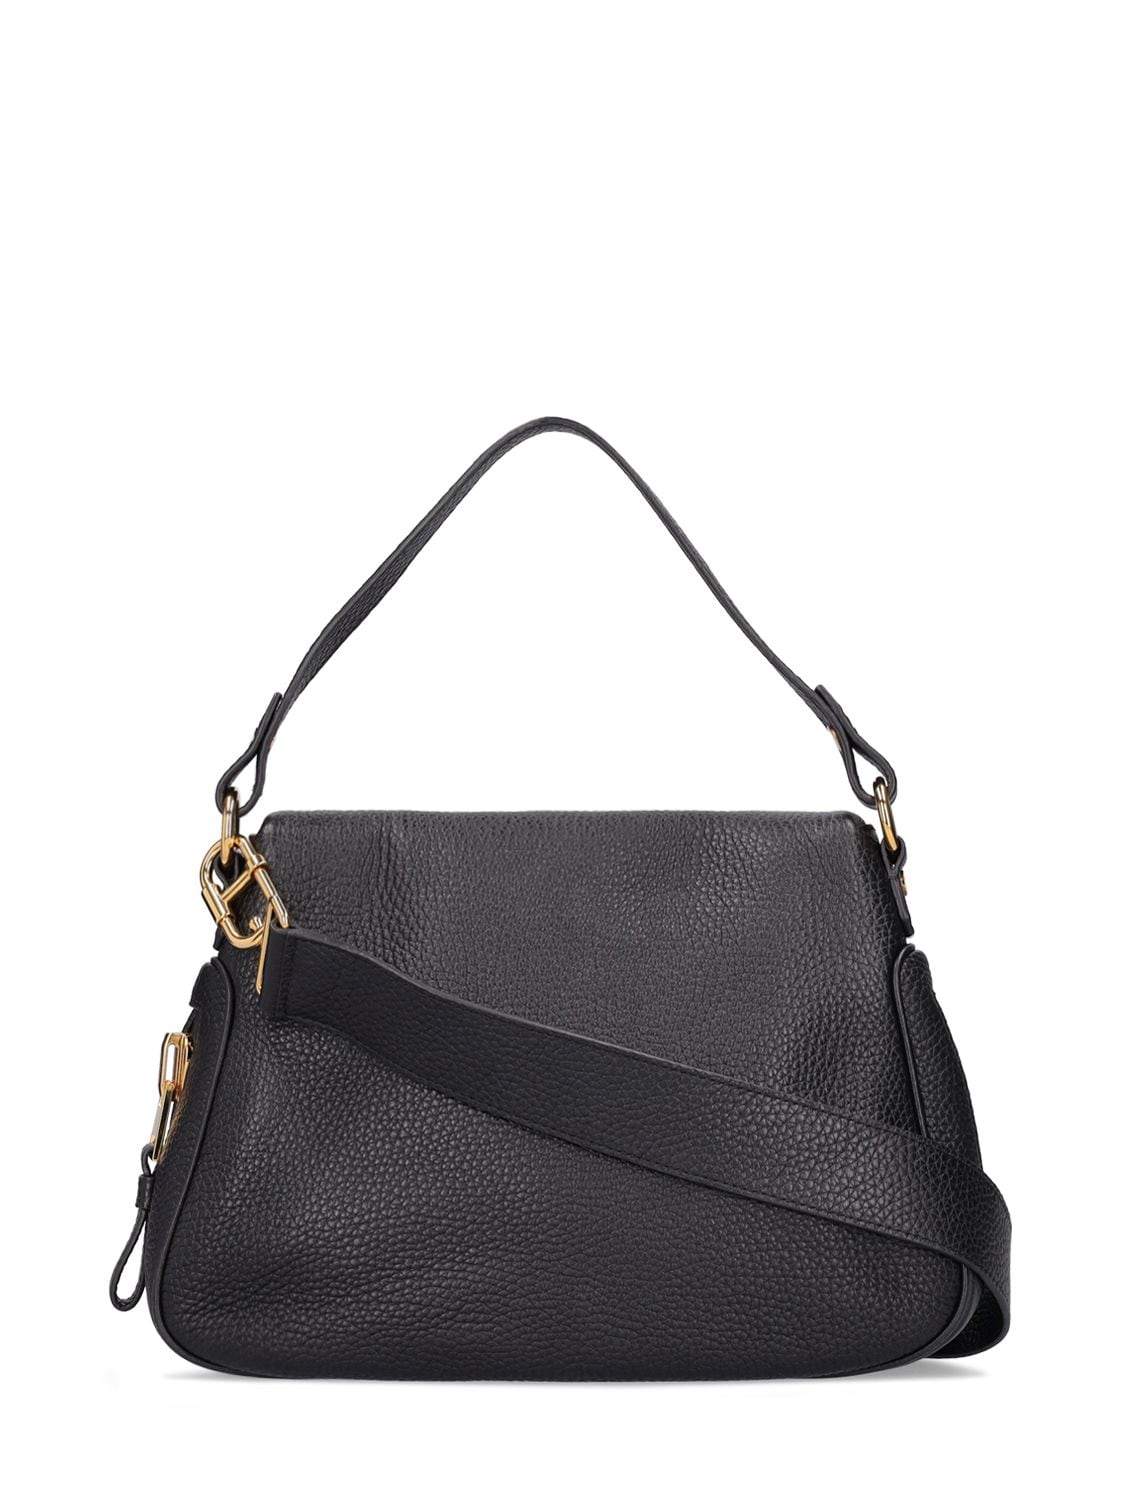 Jennifer leather handbag Tom Ford Black in Leather - 31471719